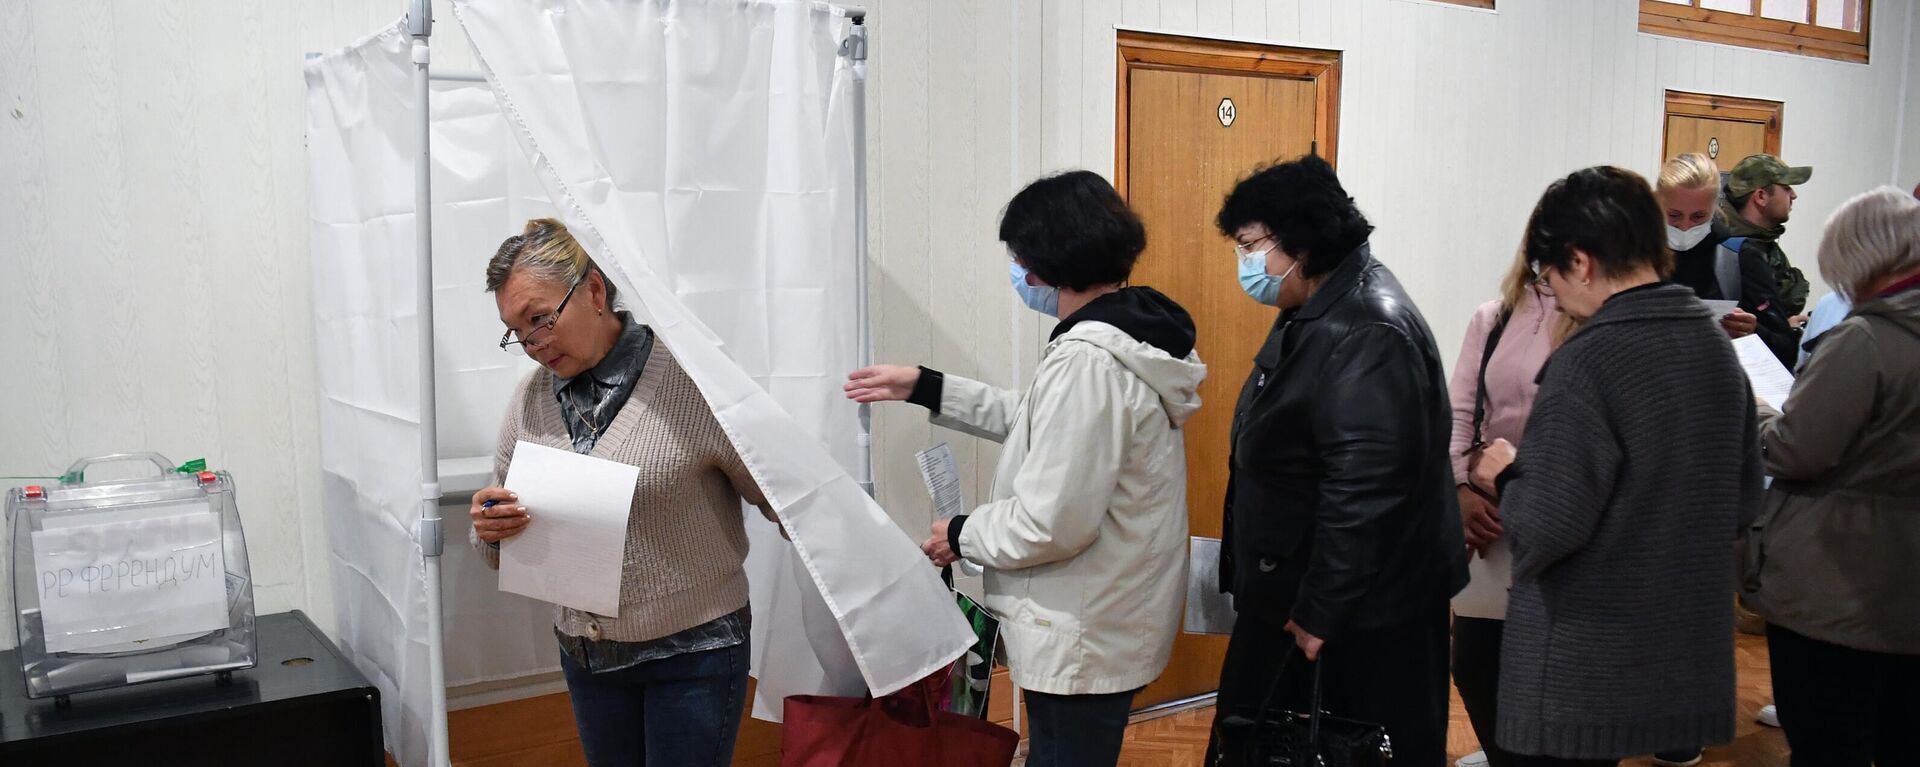 يصوت الناس في استفتاء على انضمام مقاطعة زابوروجيه إلى روسيا في مركز اقتراع في مؤسسة ميليتوبول، 23 سبتمبر 2022 - سبوتنيك عربي, 1920, 24.09.2022